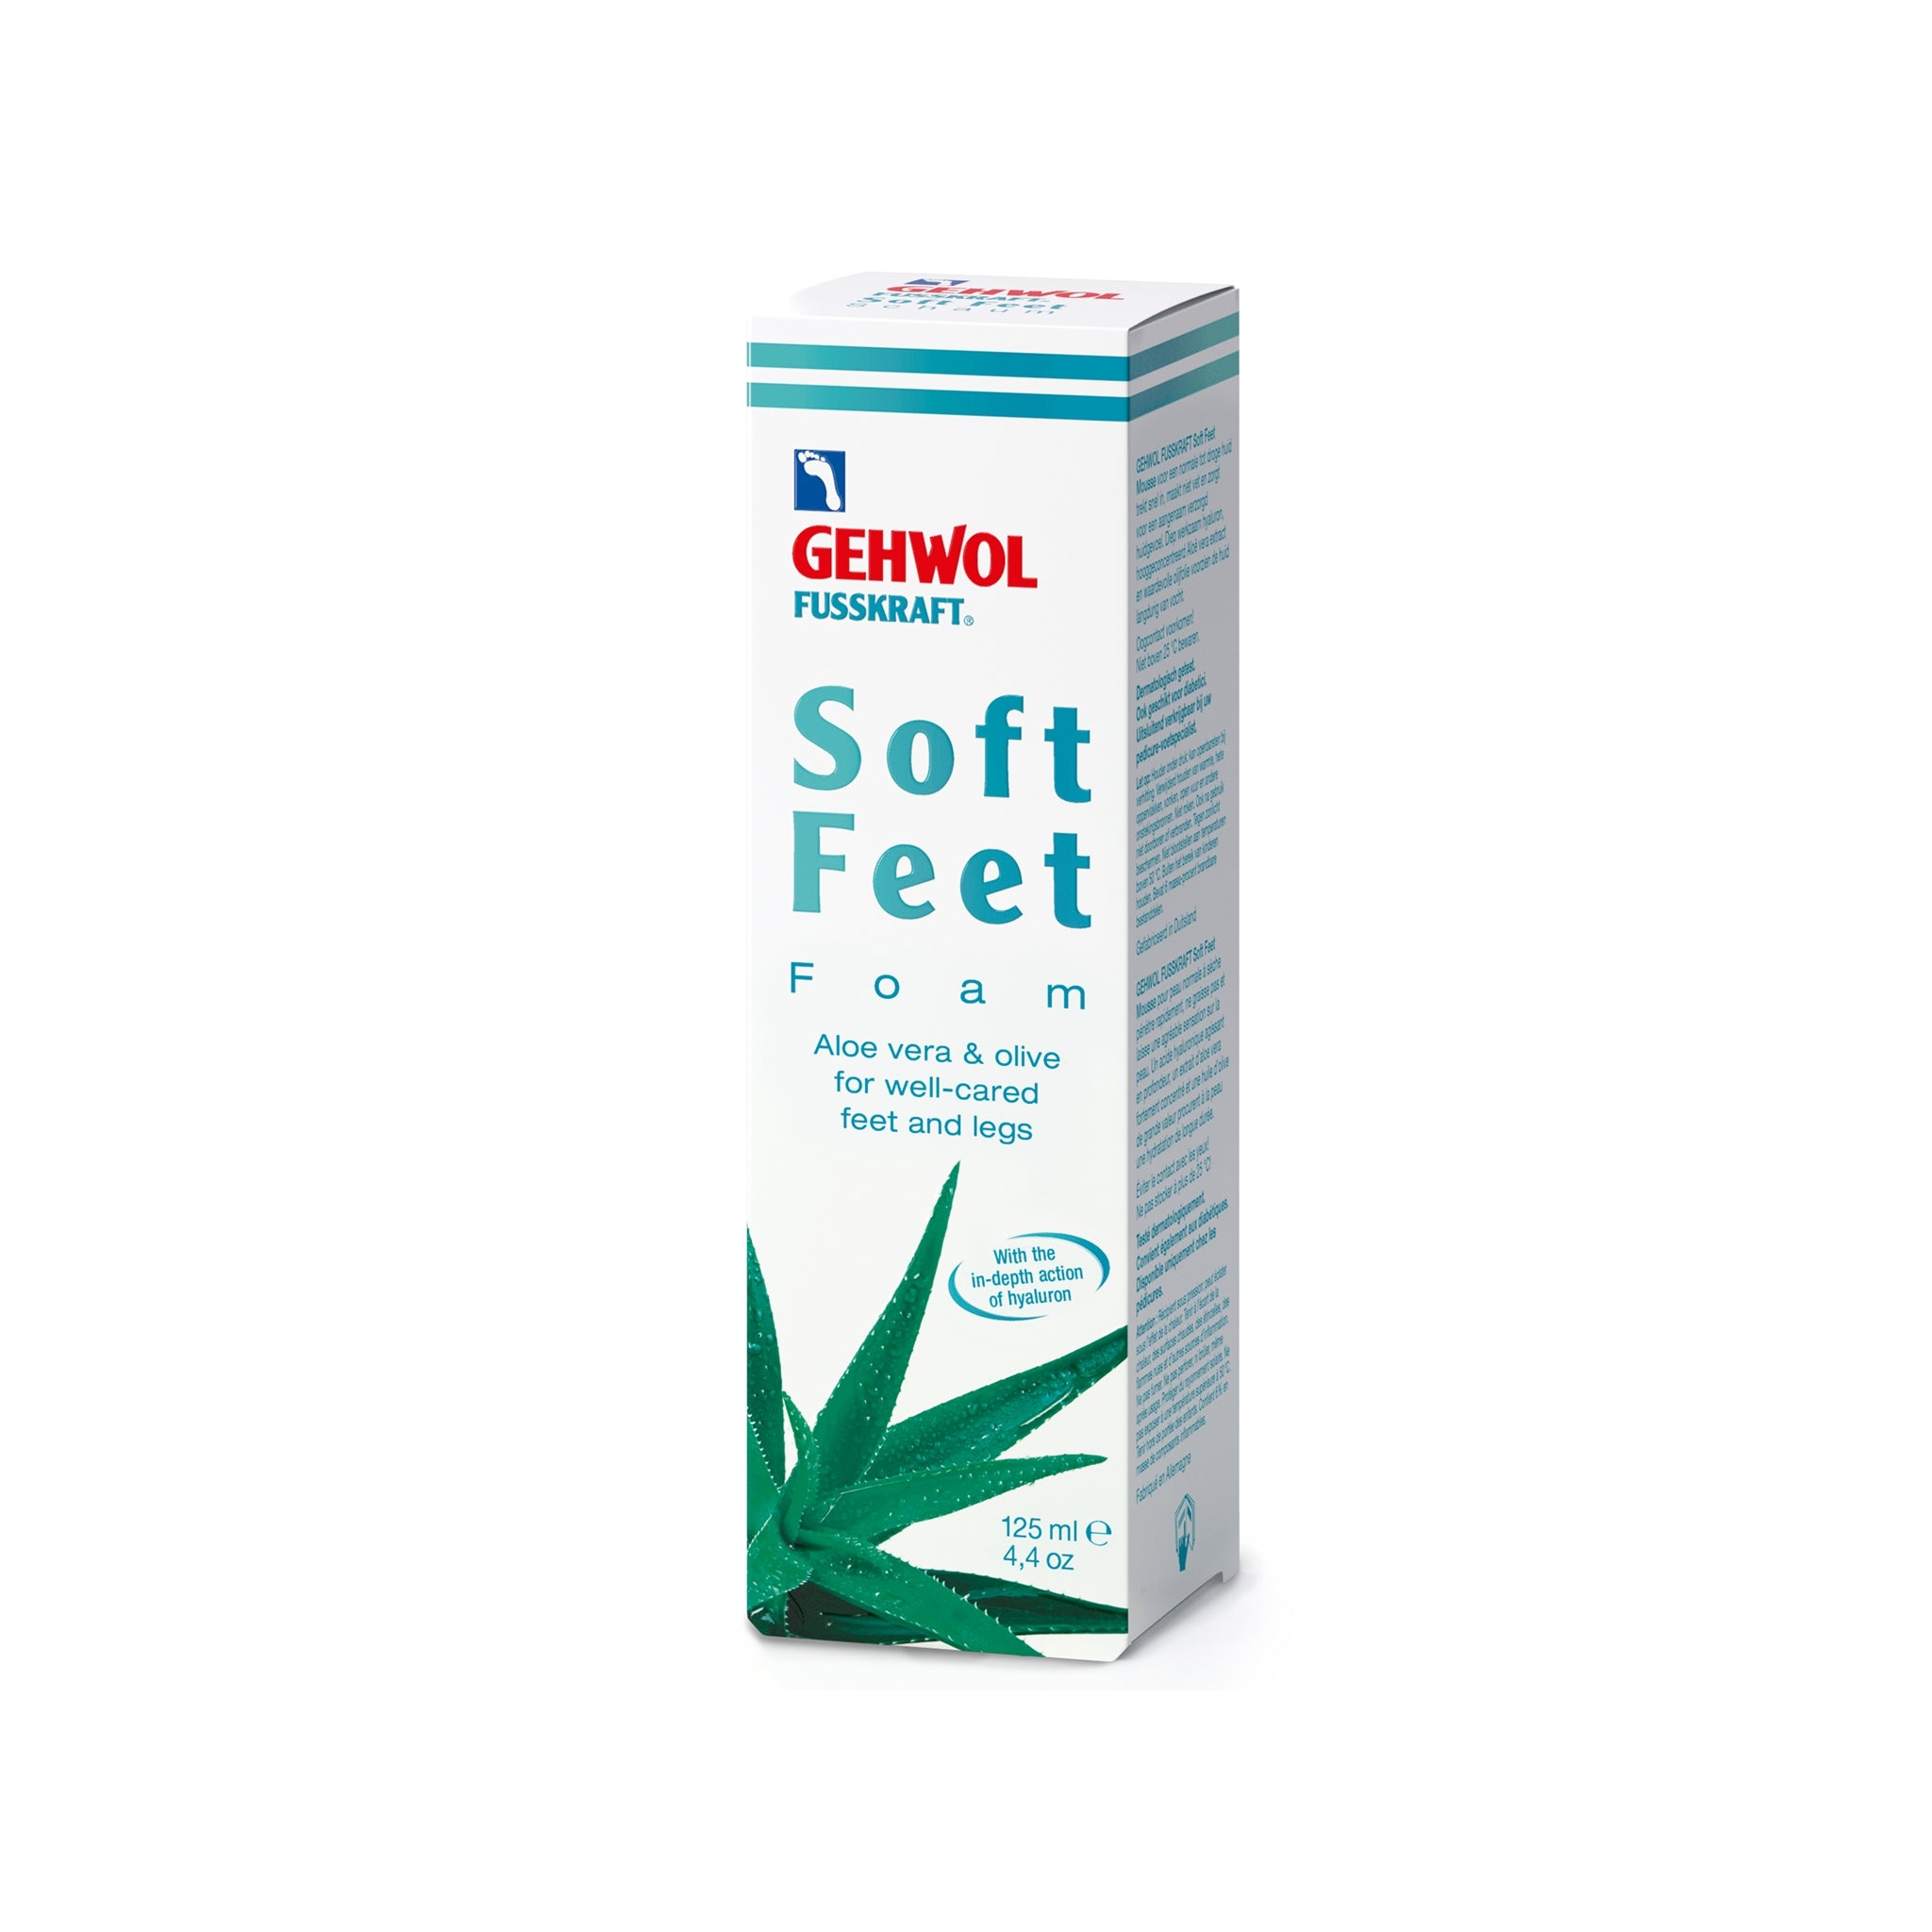 Gehwol Fusskraft Soft Feet Foam